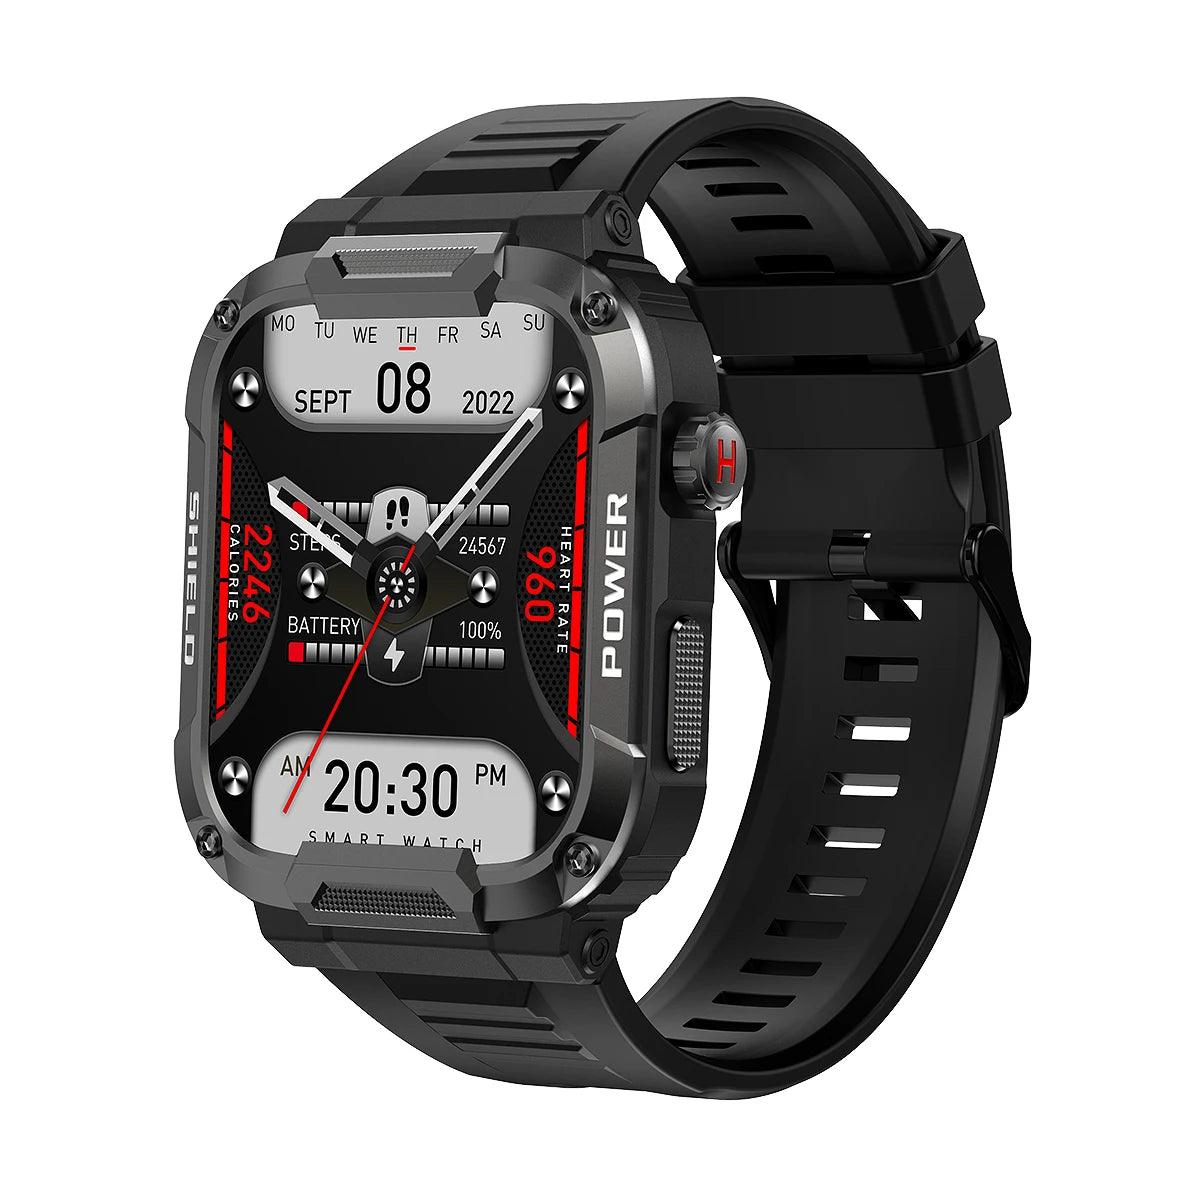 Relógio Inteligente Original para Homens e Mulheres, Rastreador GPS, Chamada Bluetooth, Fitness, Impermeável, Esporte Smartwatch Xiaomi, Huawei, Android, iOS